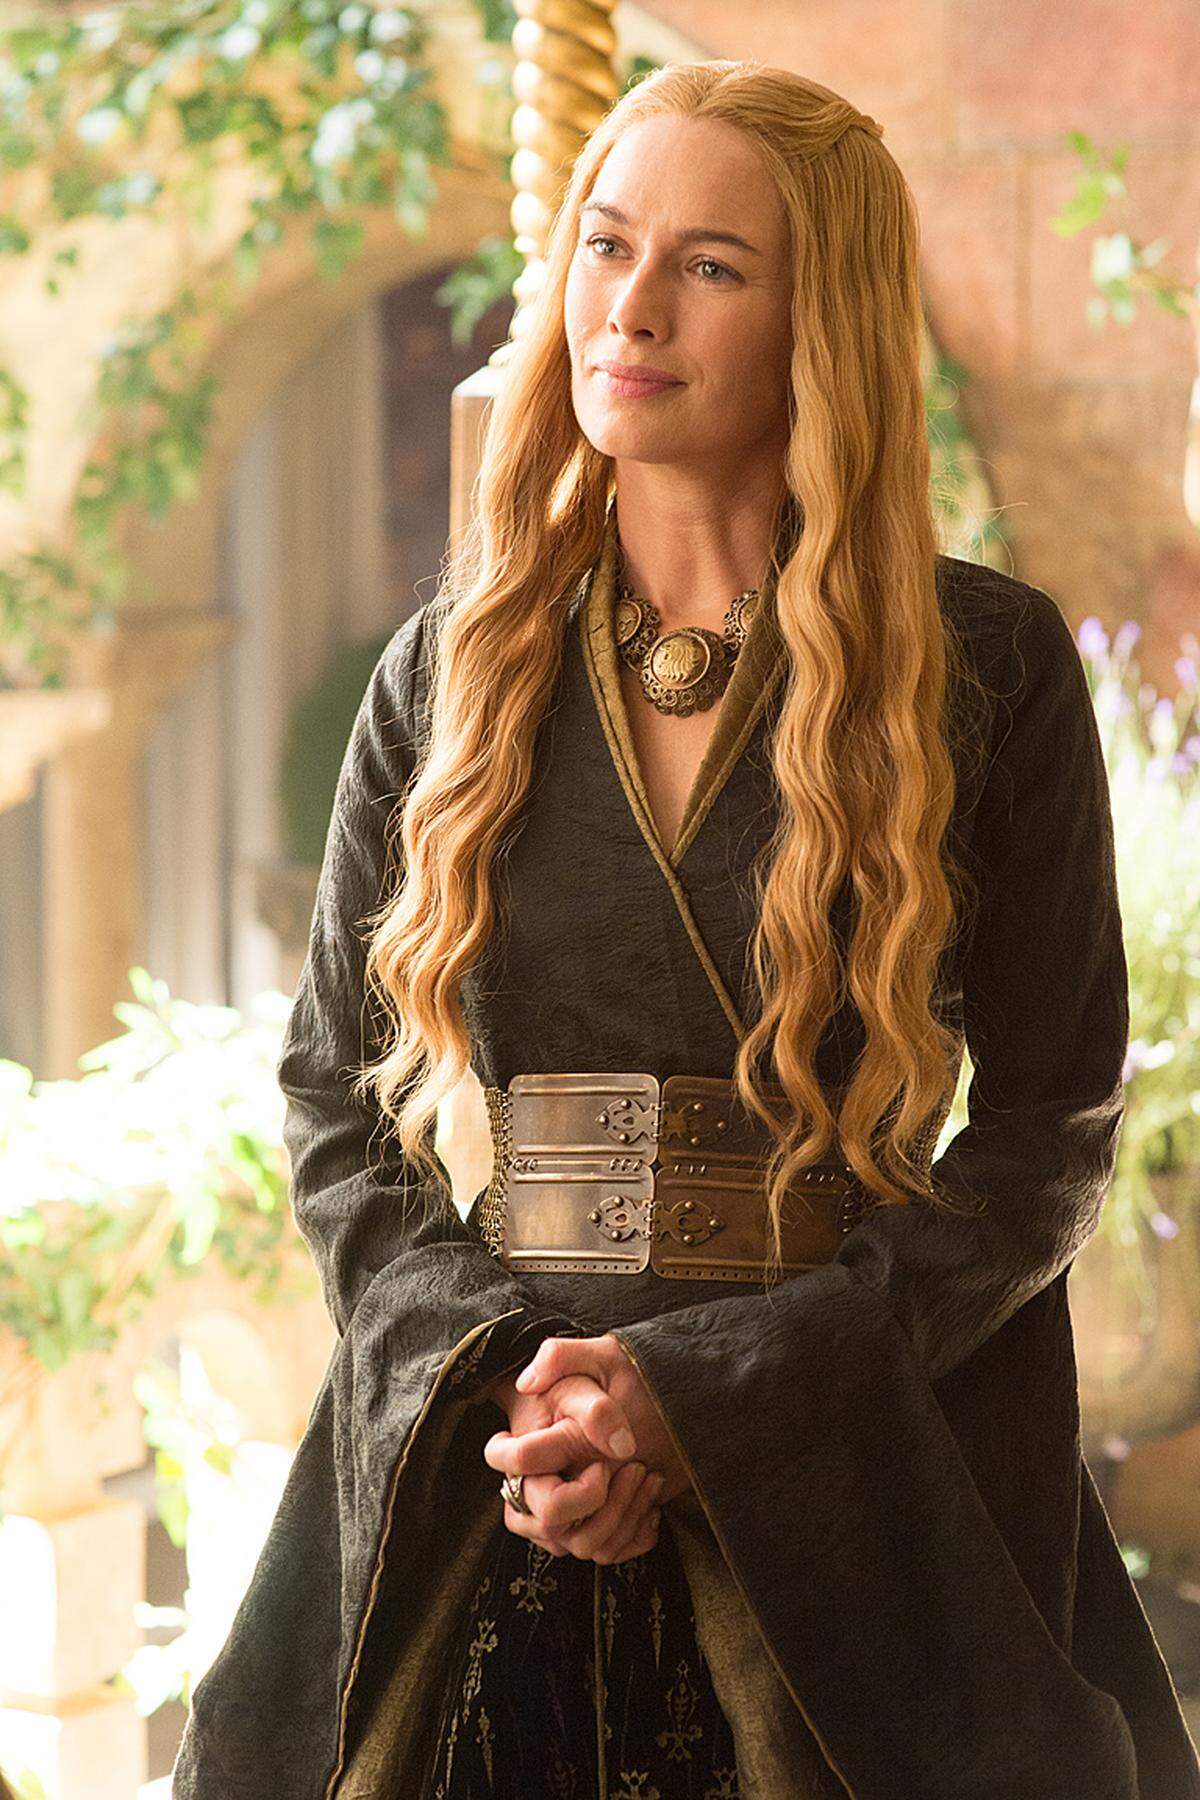 Die Witwe von König Robert Baratheon stammt aus dem Haus Lannister und ist weit ehrgeiziger, als ihre sanfte Art vermuten lässt. Mutter des verstorbenen Königs Joffrey, des amtierenden Königs Tommen und der nach Dorne verschifften Myrcella. Hat ein ungesundes Naheverhältnis zu ihrem Zwillingsbruder Jaime.